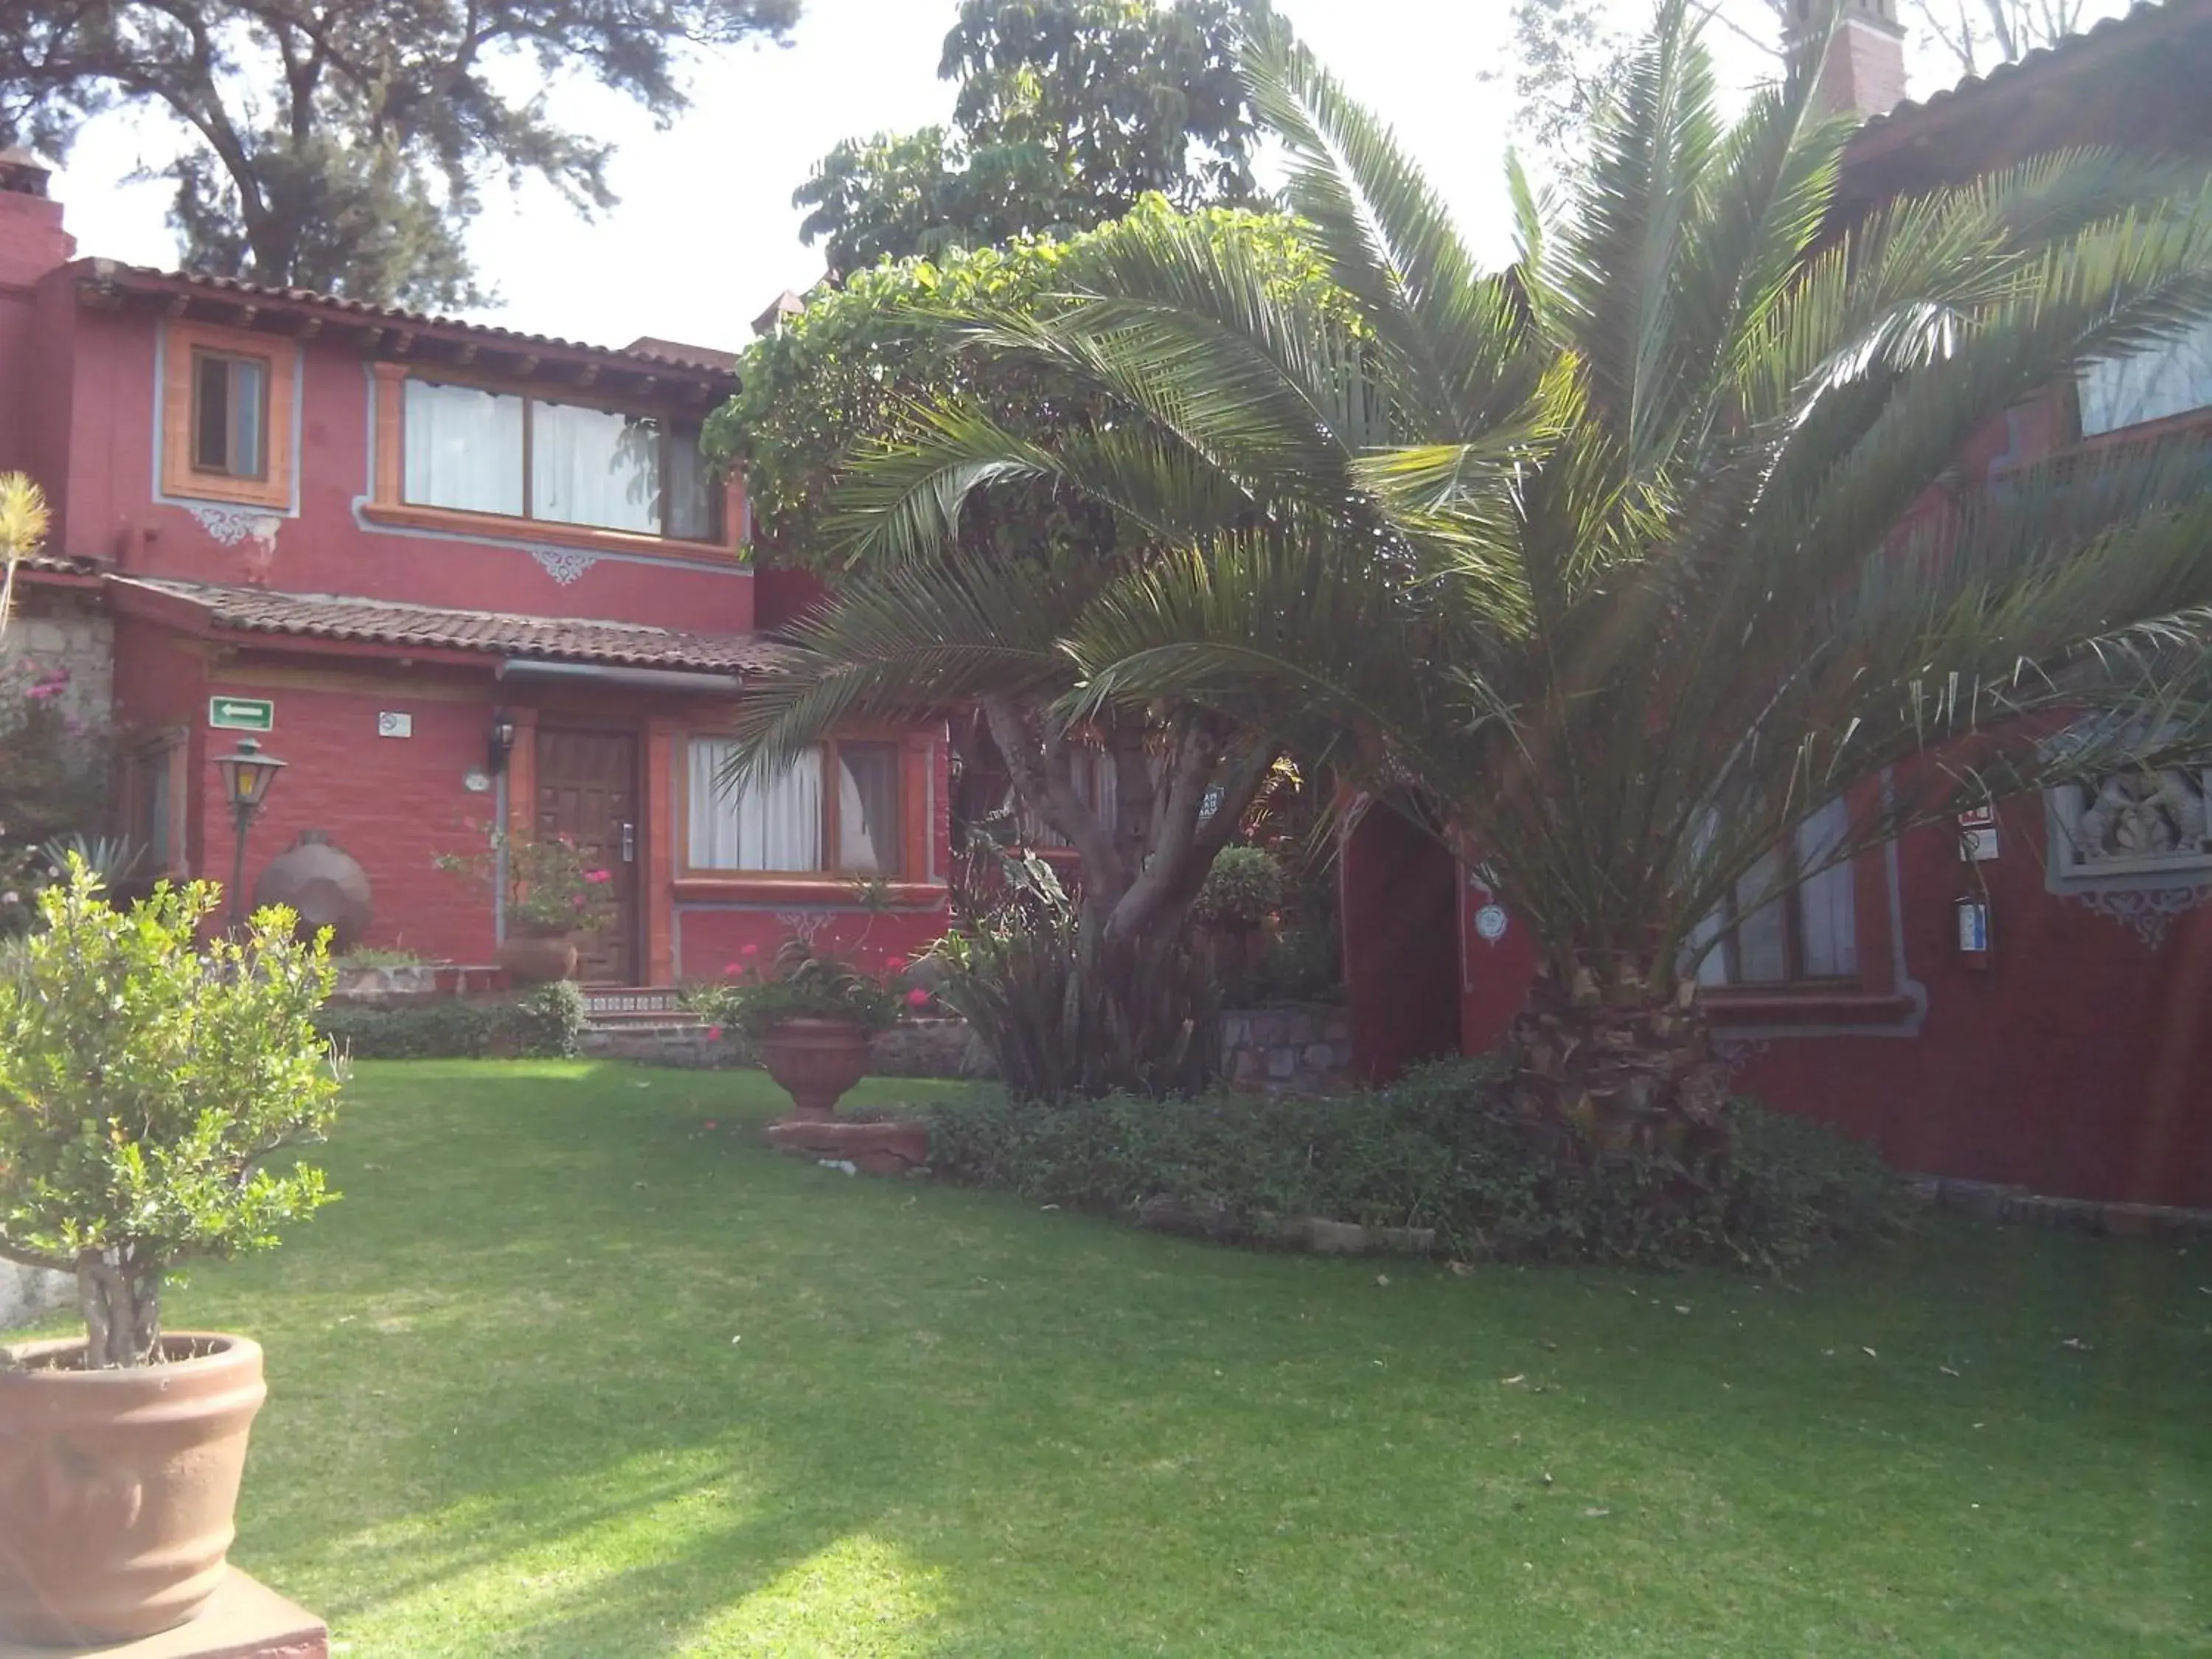 Property building, Garden in Villa San Jose Hotel & Suites